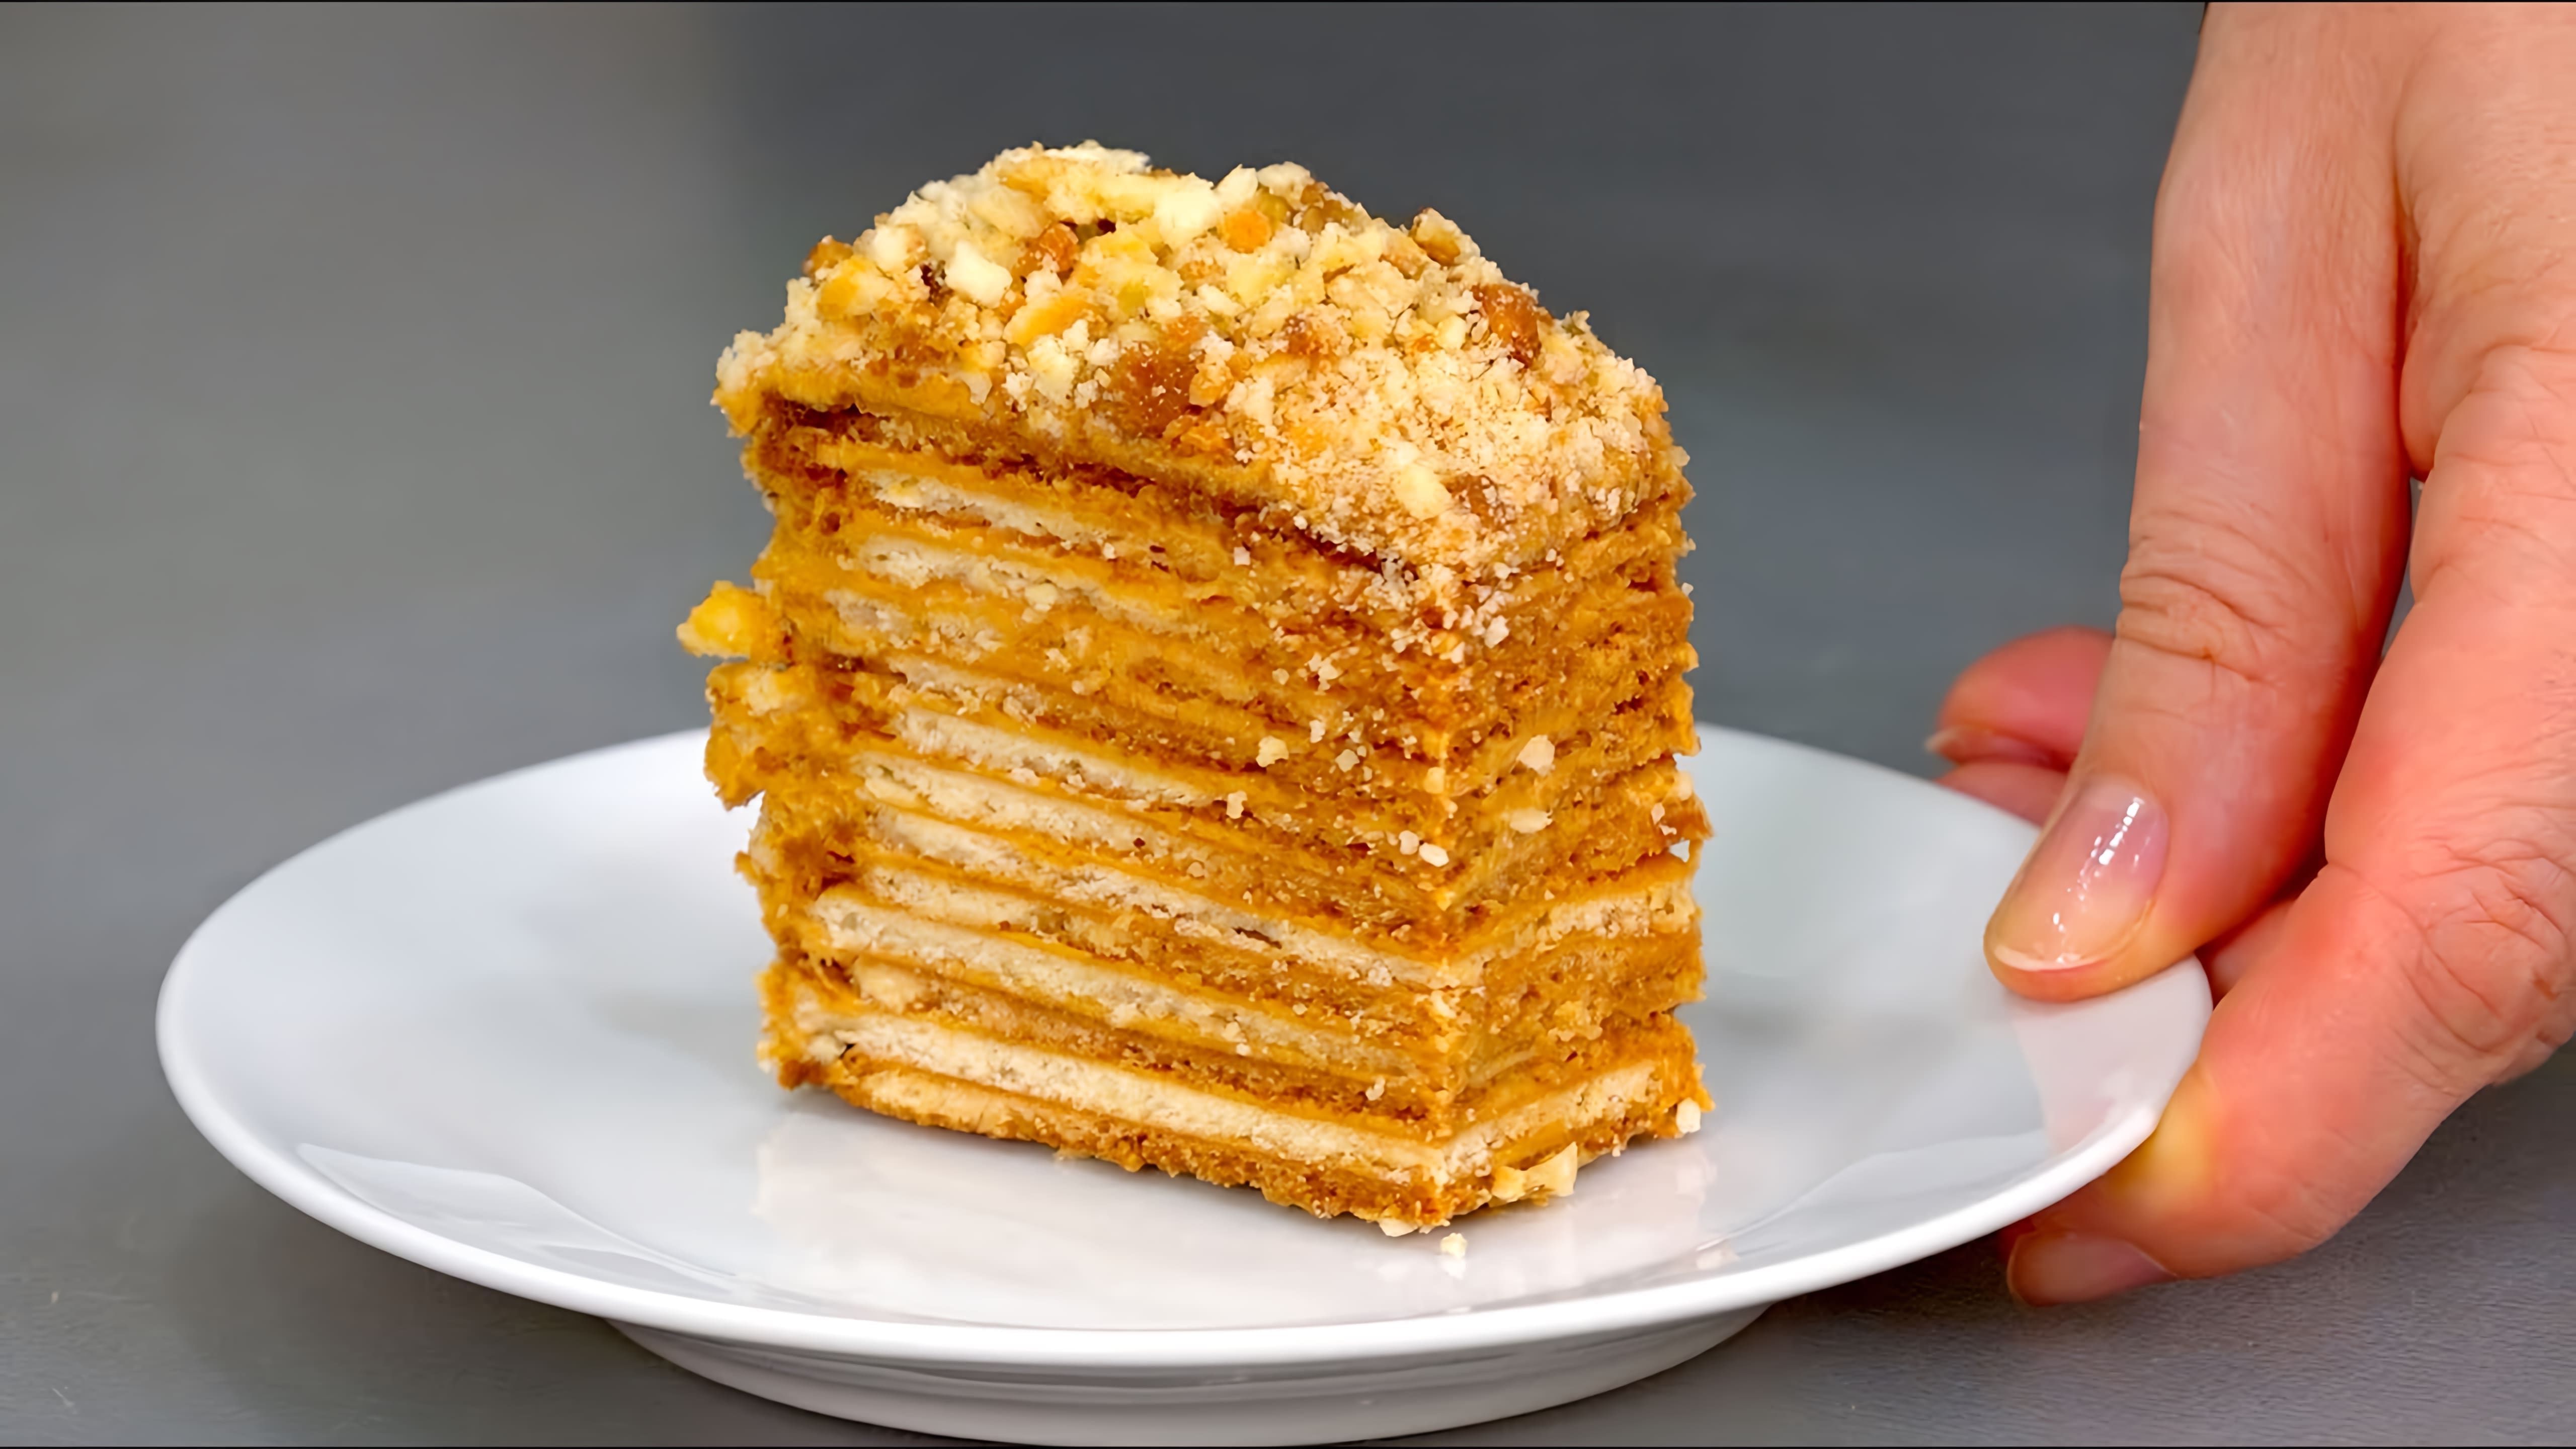 В этом видео демонстрируется рецепт приготовления торта "МАМУЛИН", который является альтернативой классическому торту "Наполеон"